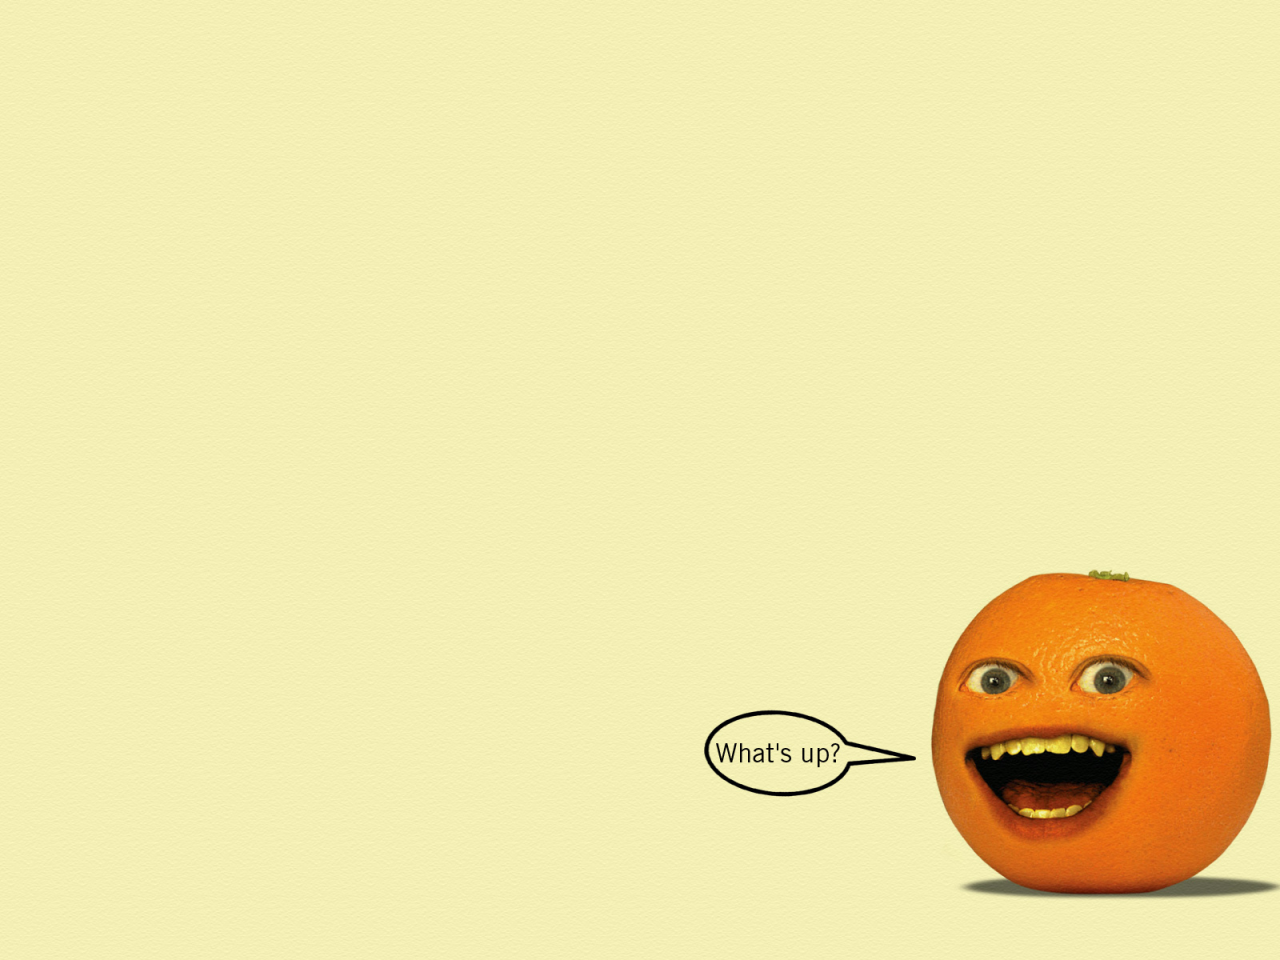 the annoying orange, надоедливый апельсин, взгляд, надпись